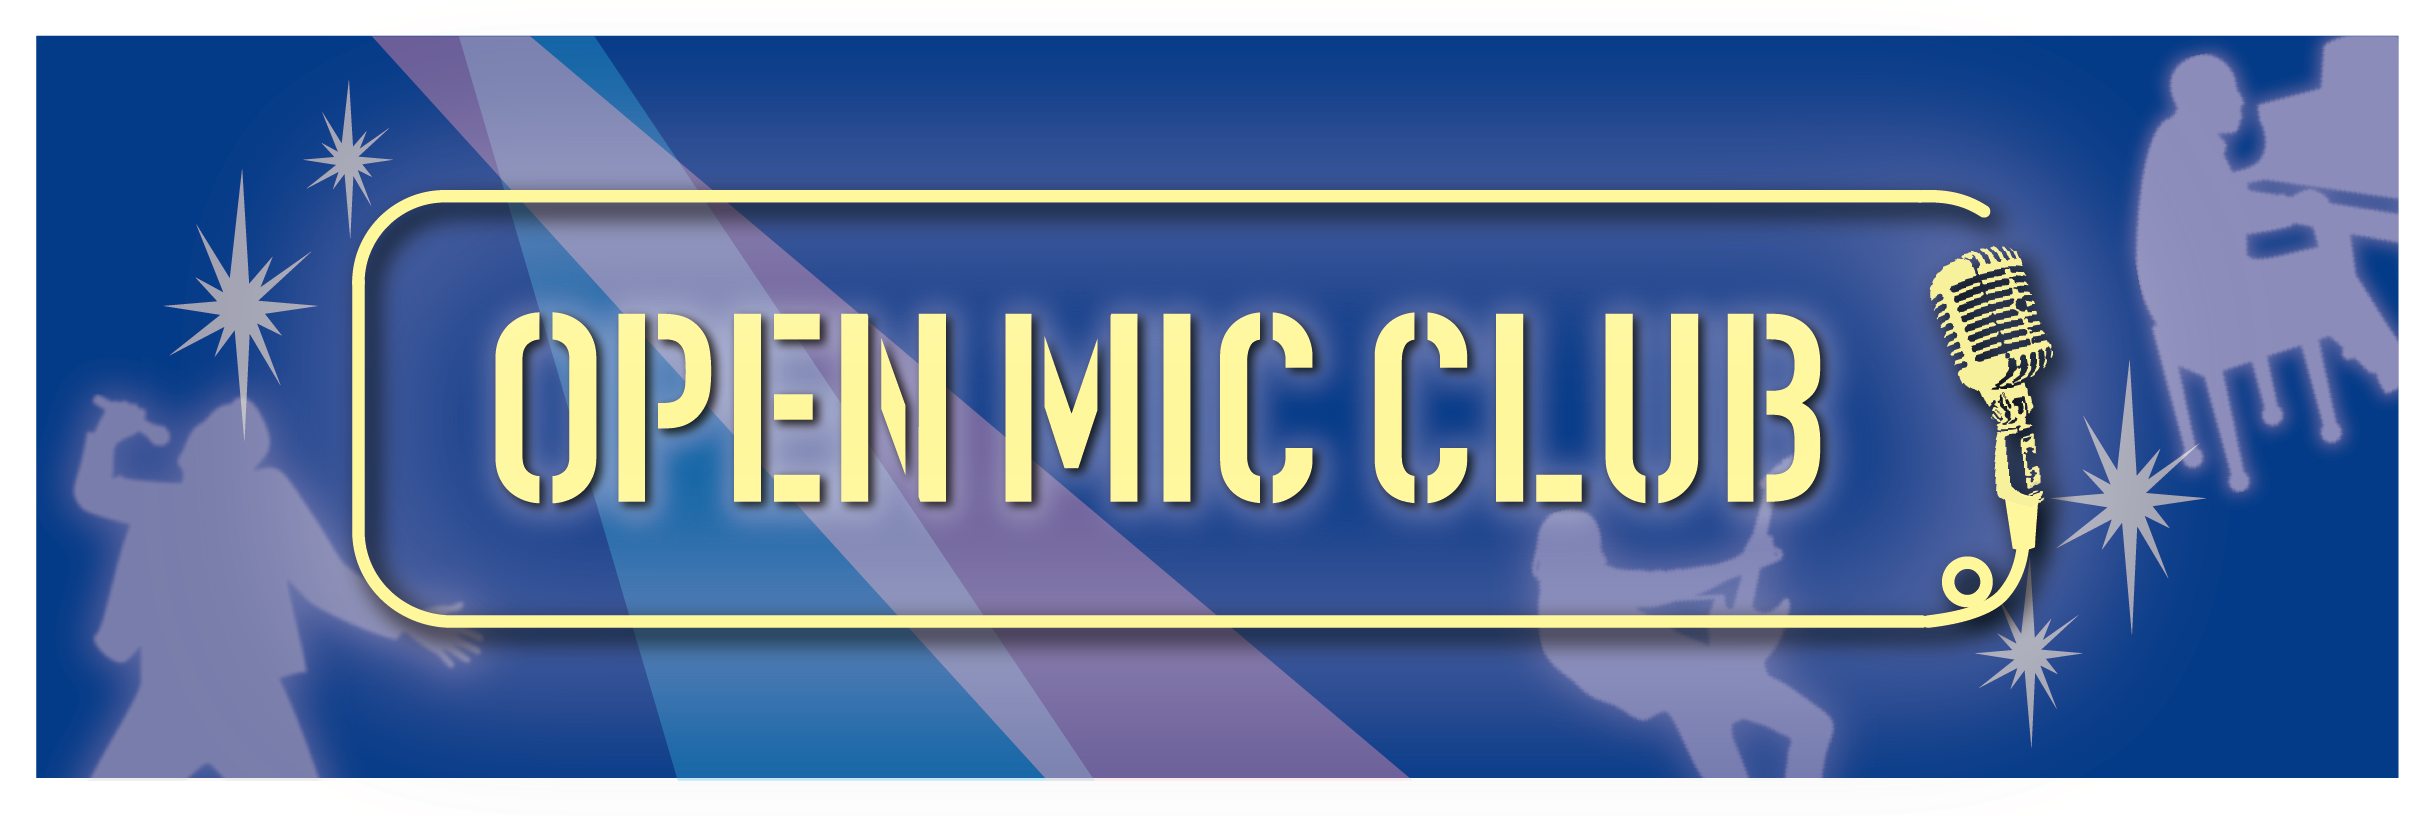 OPEN MIC CLUB開催しました！ OPEN MIC CLUB担当の八木です！本日もOPEN MIC CLUB開催いたしました！活動の様子をサークルレポートでお届けいたします！ 「OPEN MIC CLUB」って何？という方はこちら 「OPEN MIC CLUB」とは、みんなで楽しく音楽を歌い […]